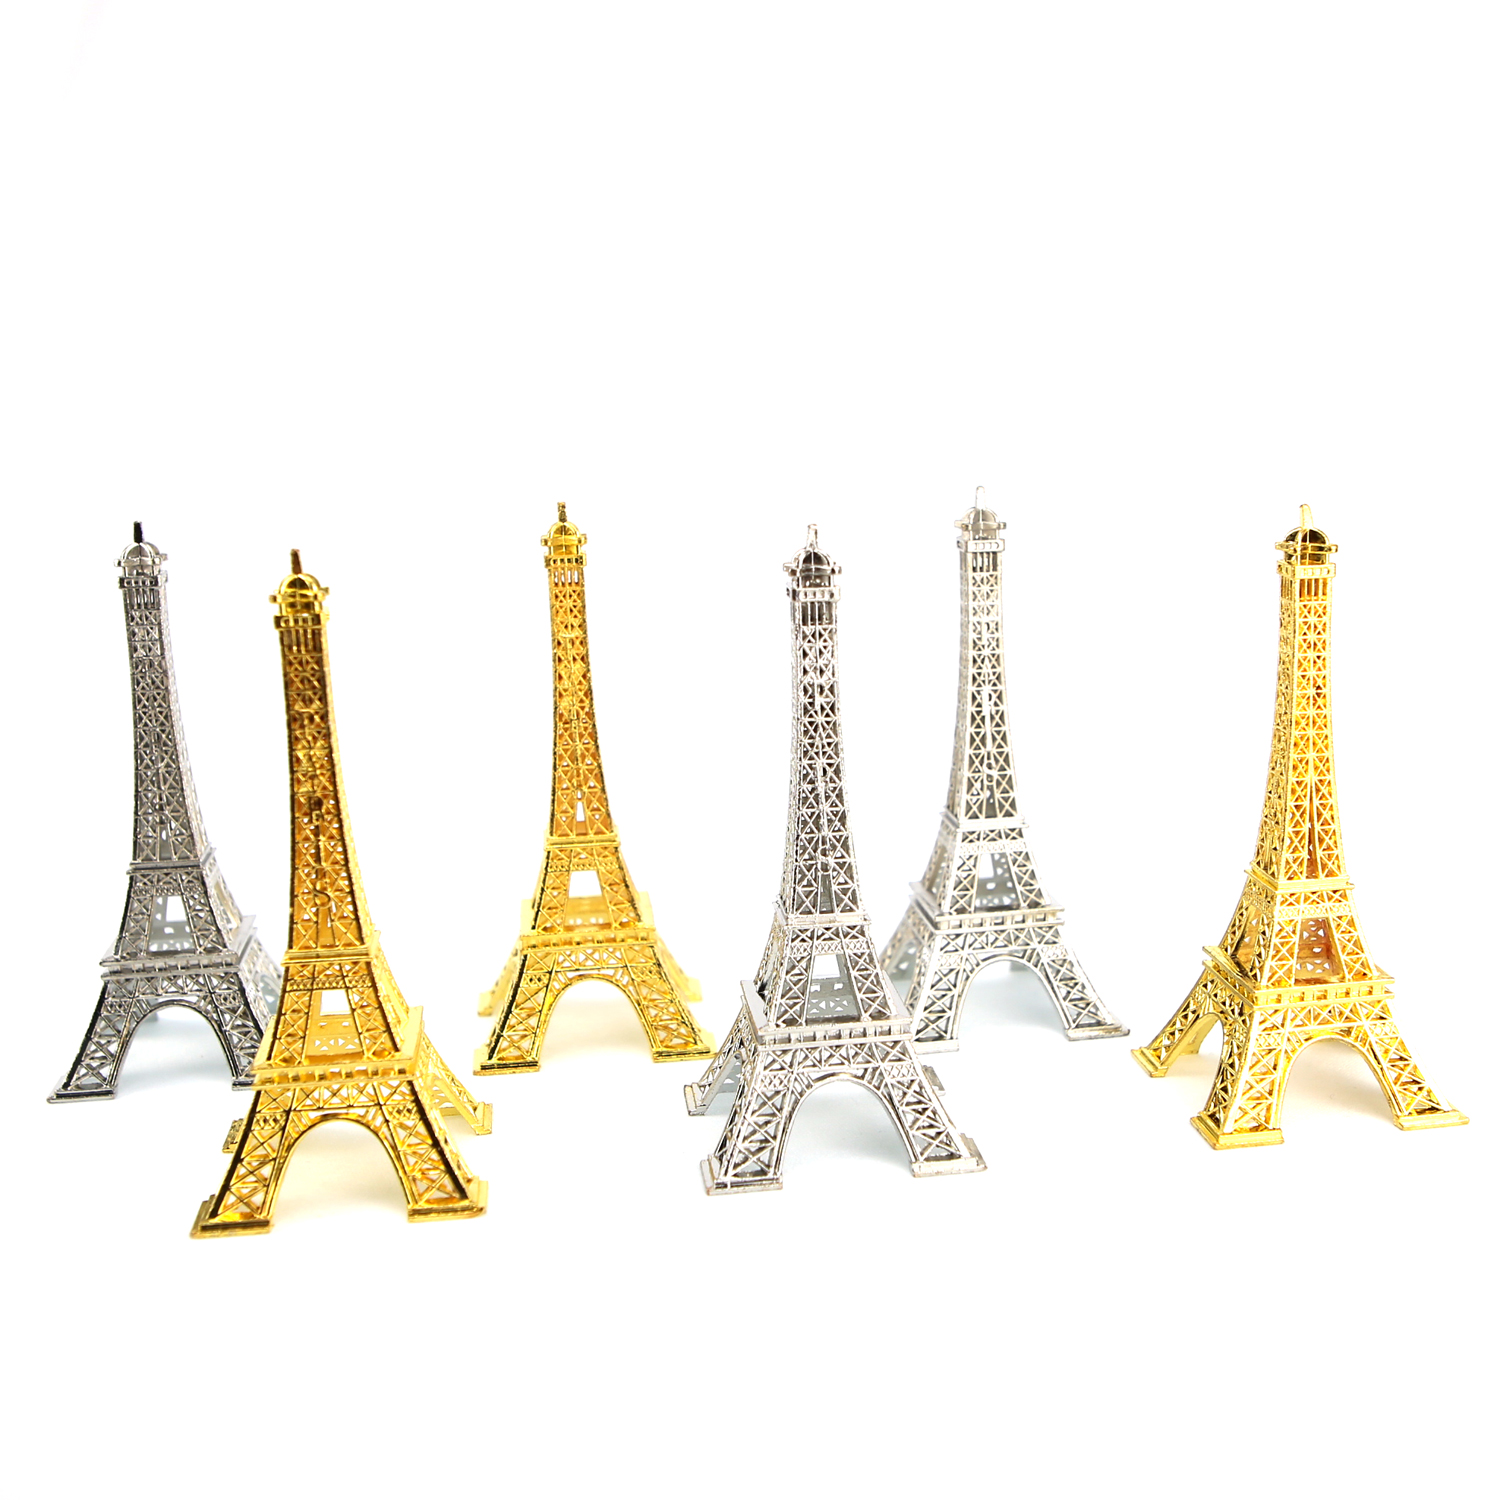 Tour Eiffel en métal collection souvenir de paris 10 cm H10